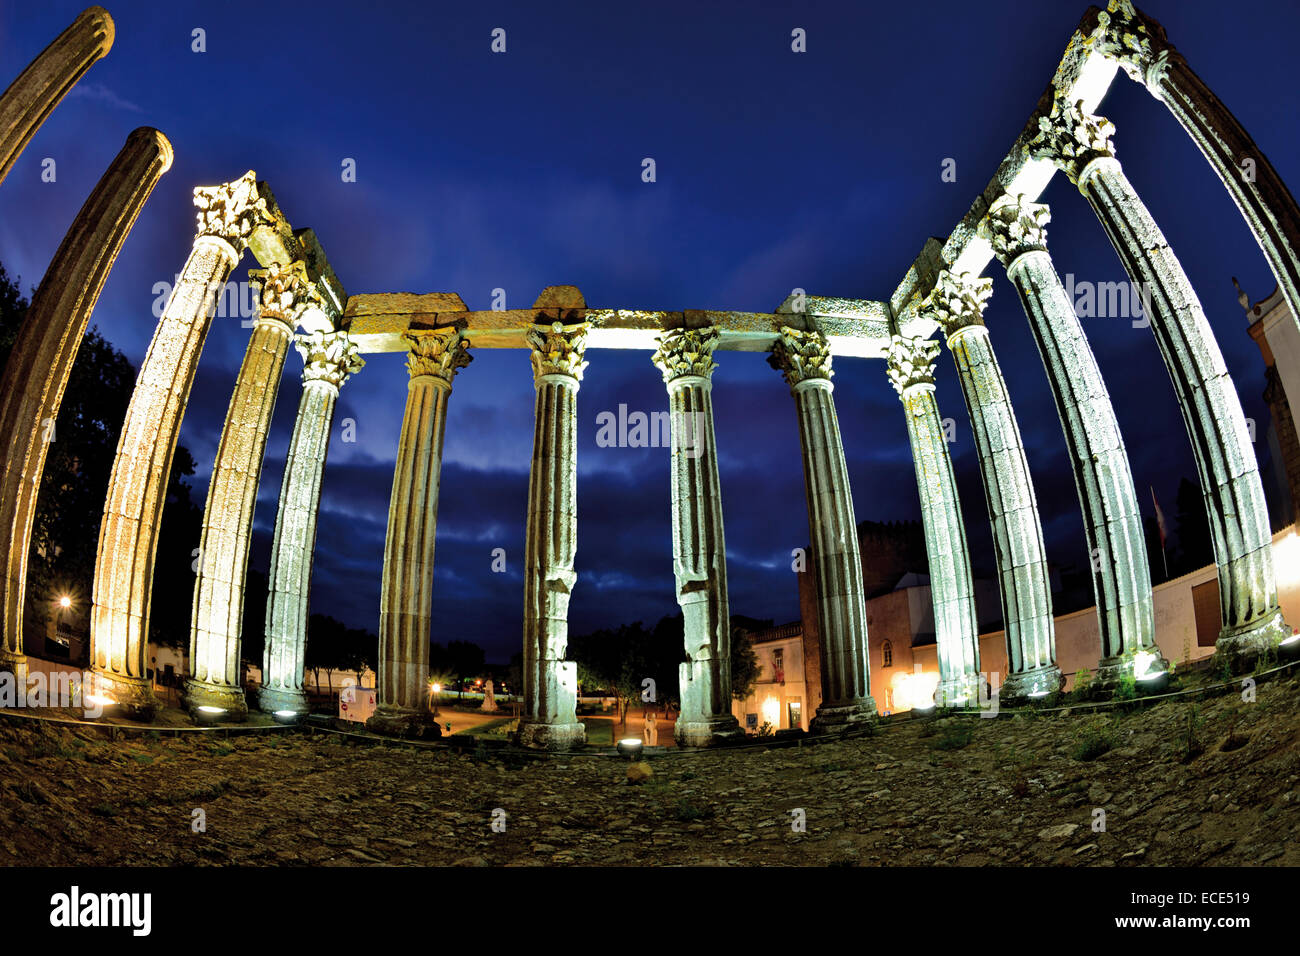 Le Portugal, l'Alentejo : temple romain d'Évora par nuit Banque D'Images